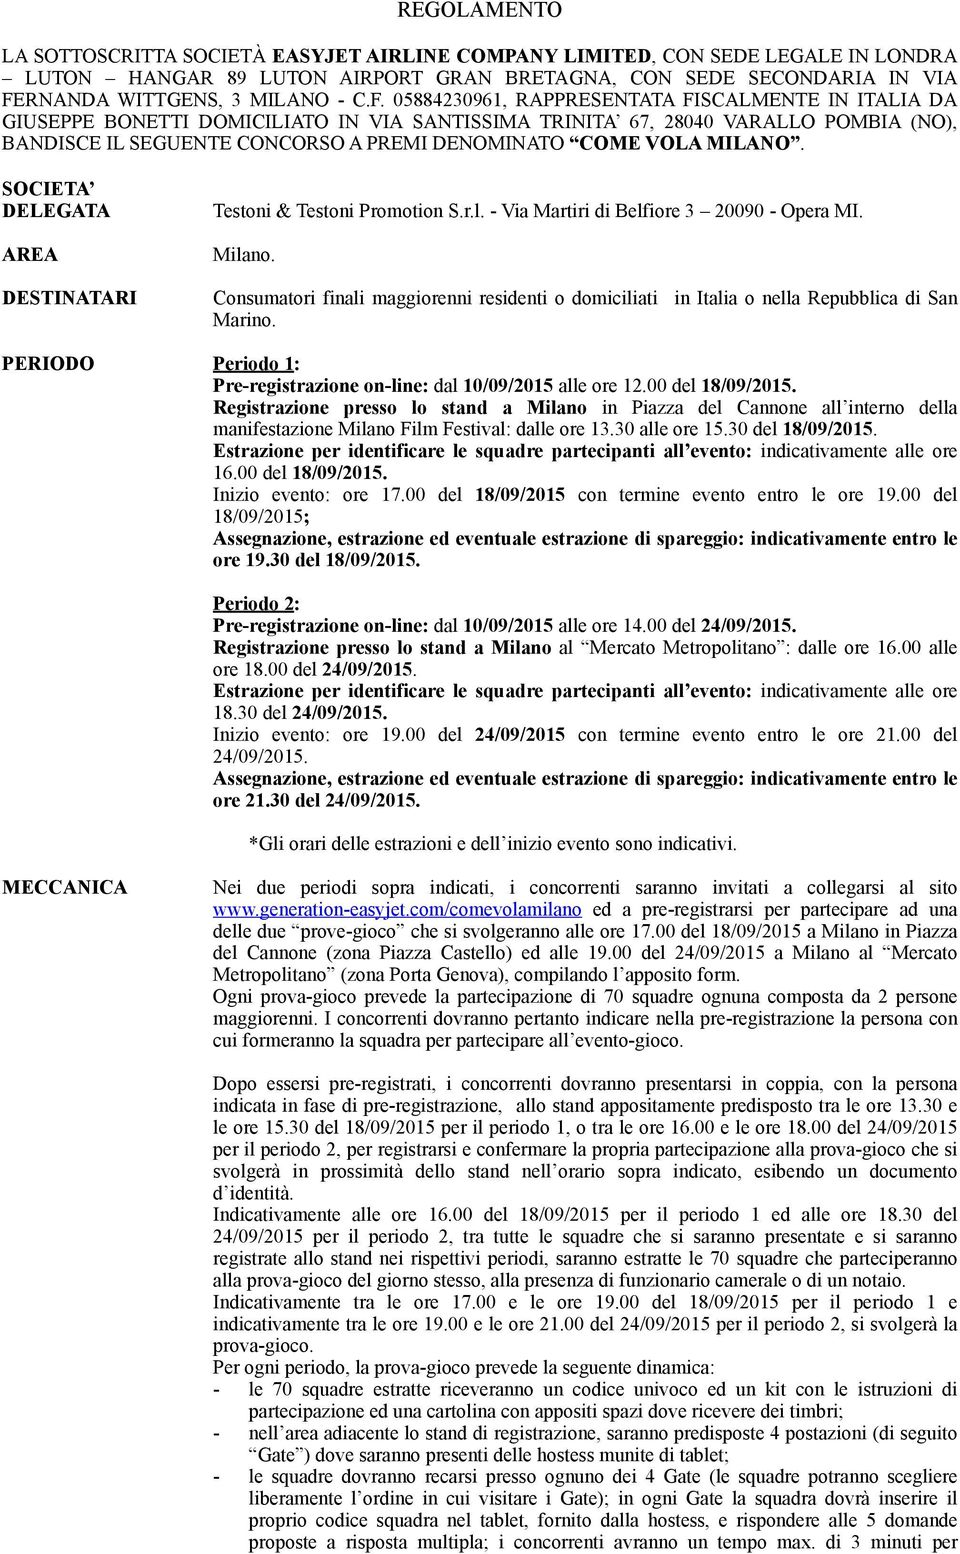 MILANO. SOCIETA DELEGATA AREA DESTINATARI Testoni & Testoni Promotion S.r.l. - Via Martiri di Belfiore 3 20090 - Opera MI. Milano.